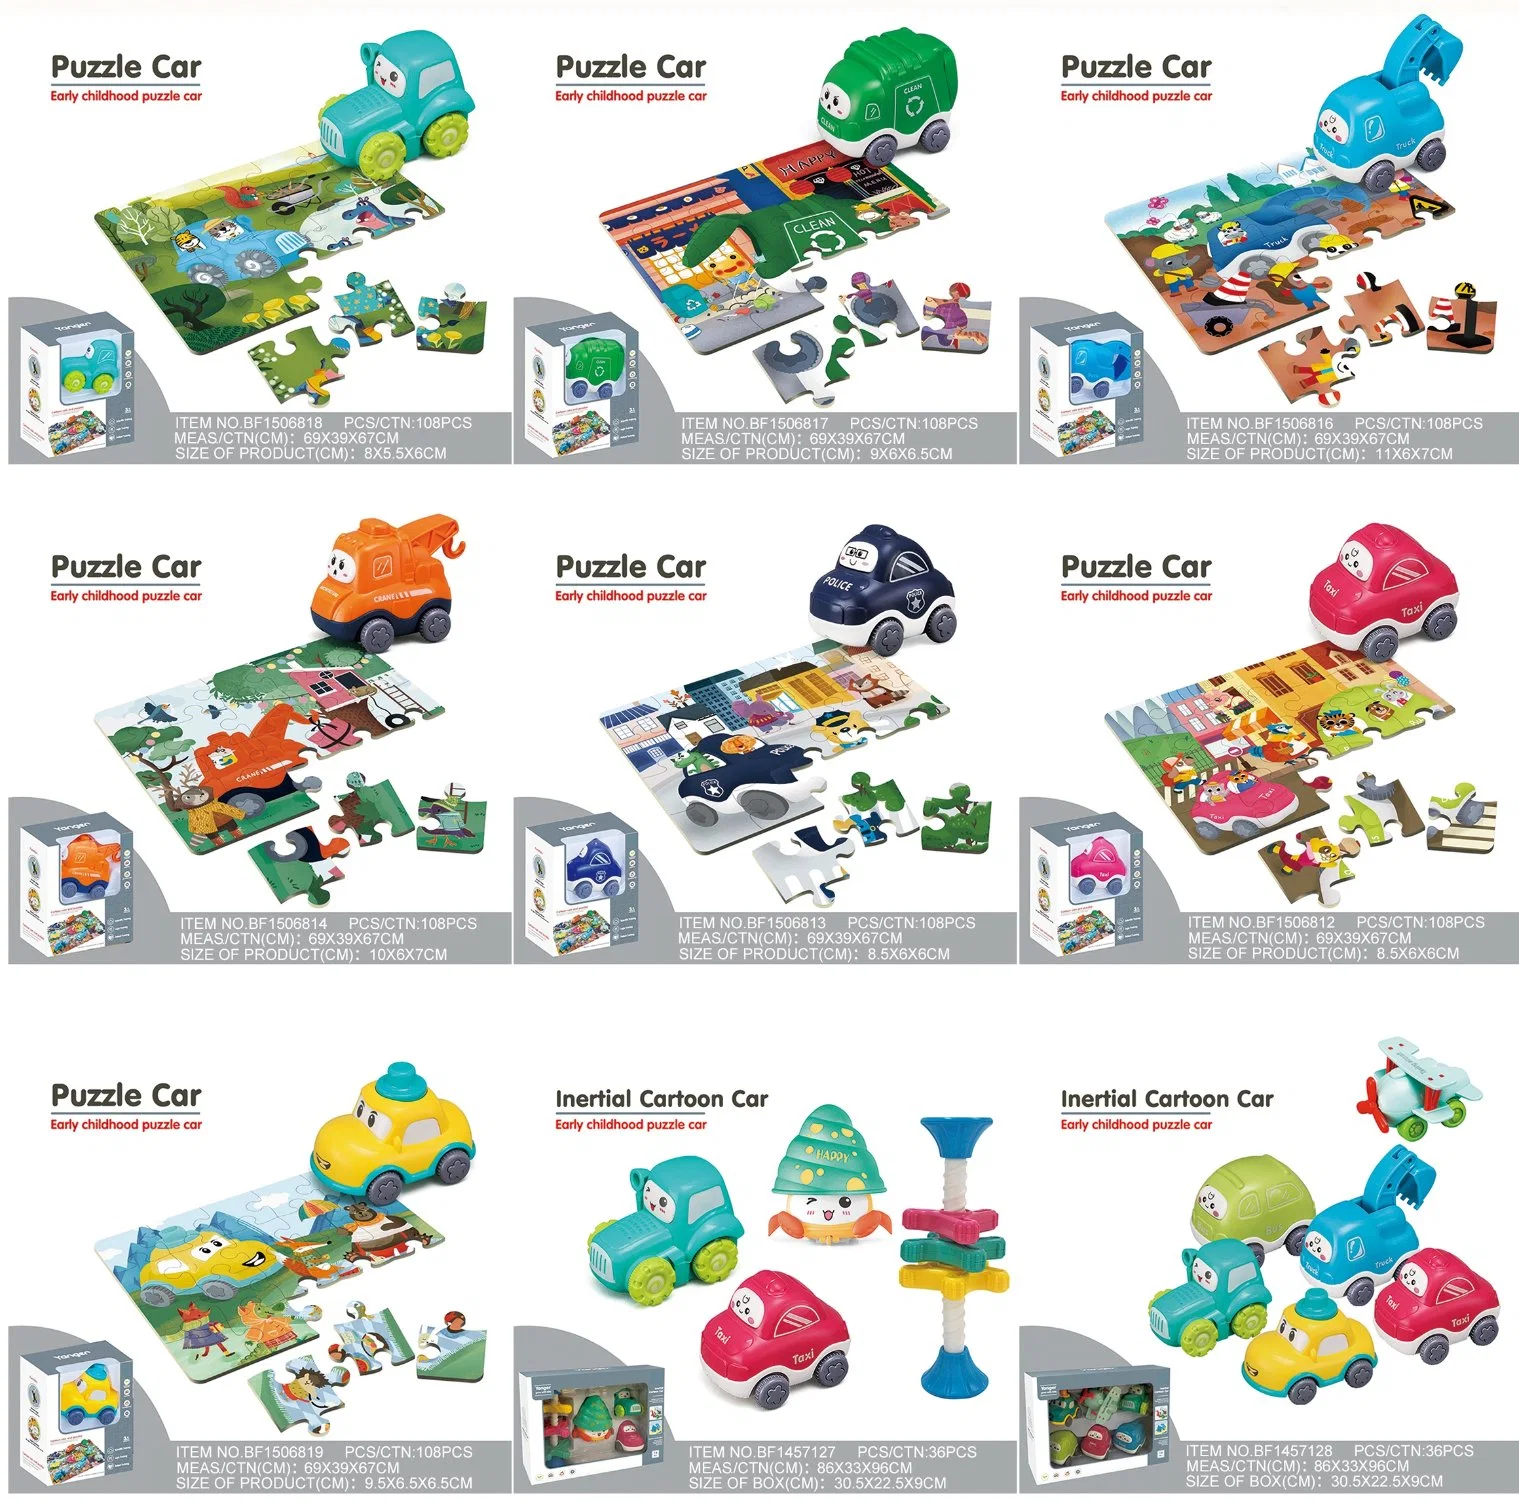 Все игрушки здесь! Каталог Детская игрушка Образование Дети Пластиковые DIY Пластиковые Оптовая продажа Подарочные детские RC Автомобили Интеллектуальные образовательные игрушки